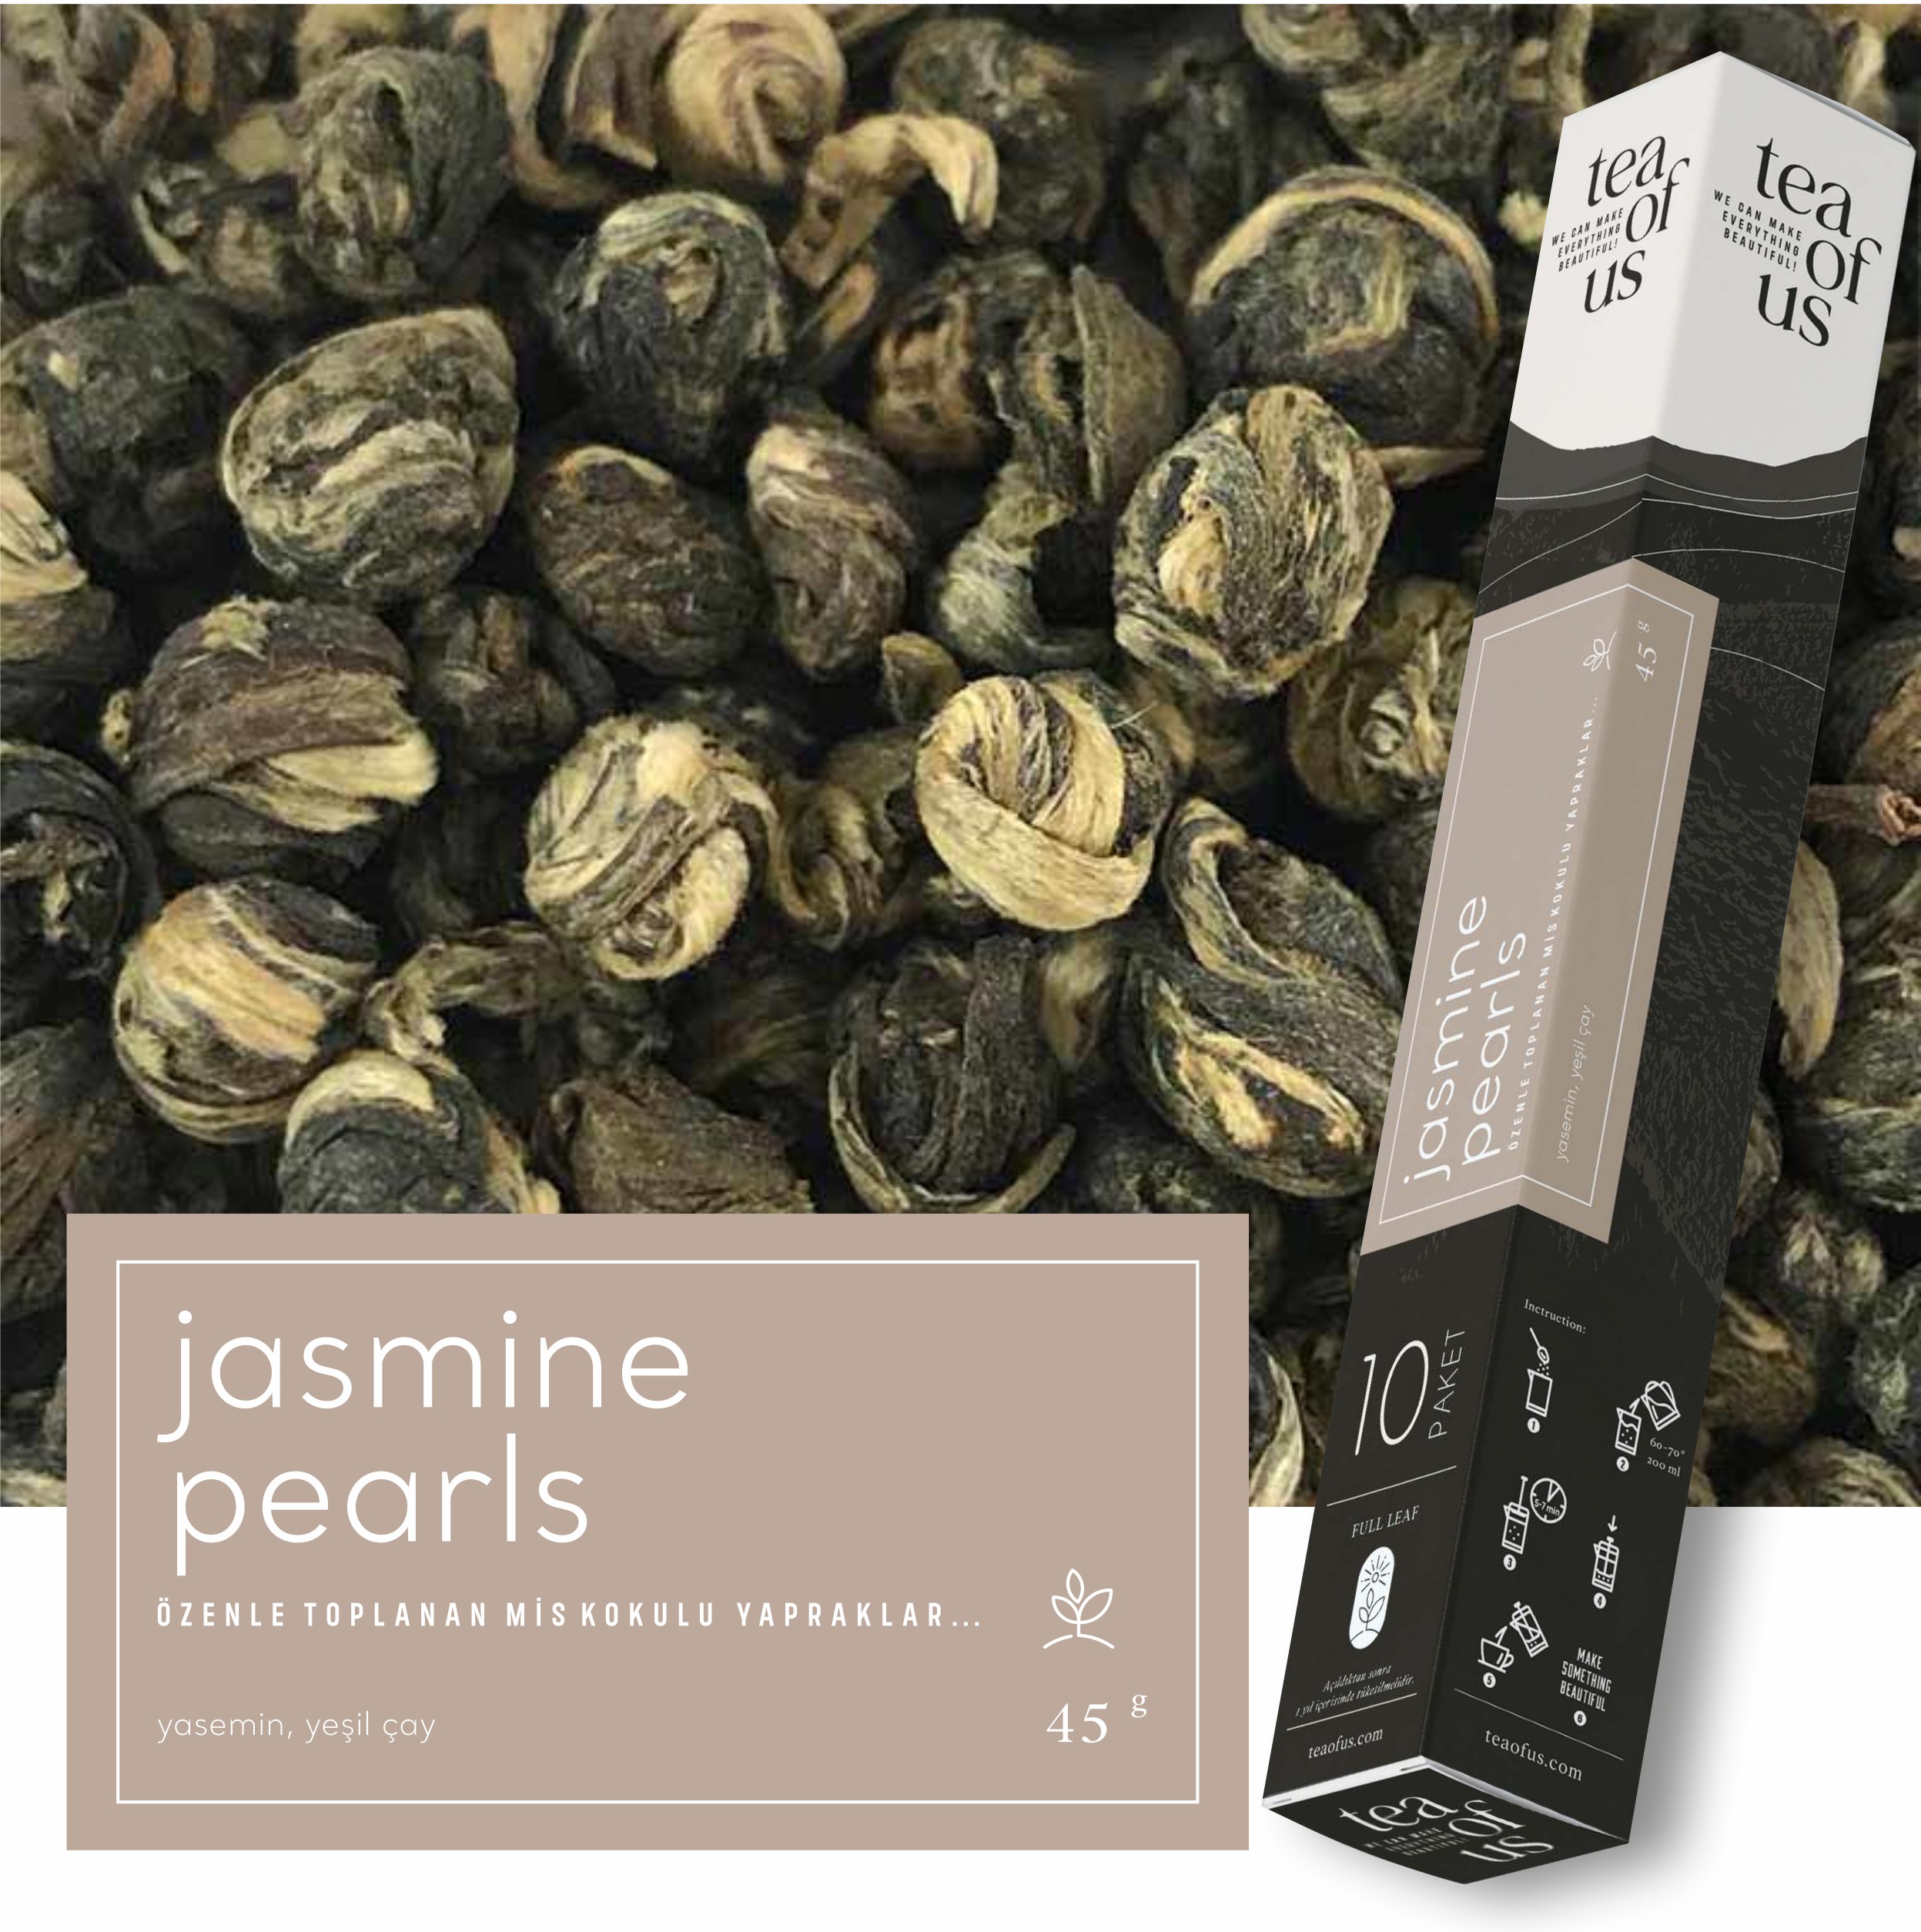 Tea of Us Jasmine pearls BOX 45gr